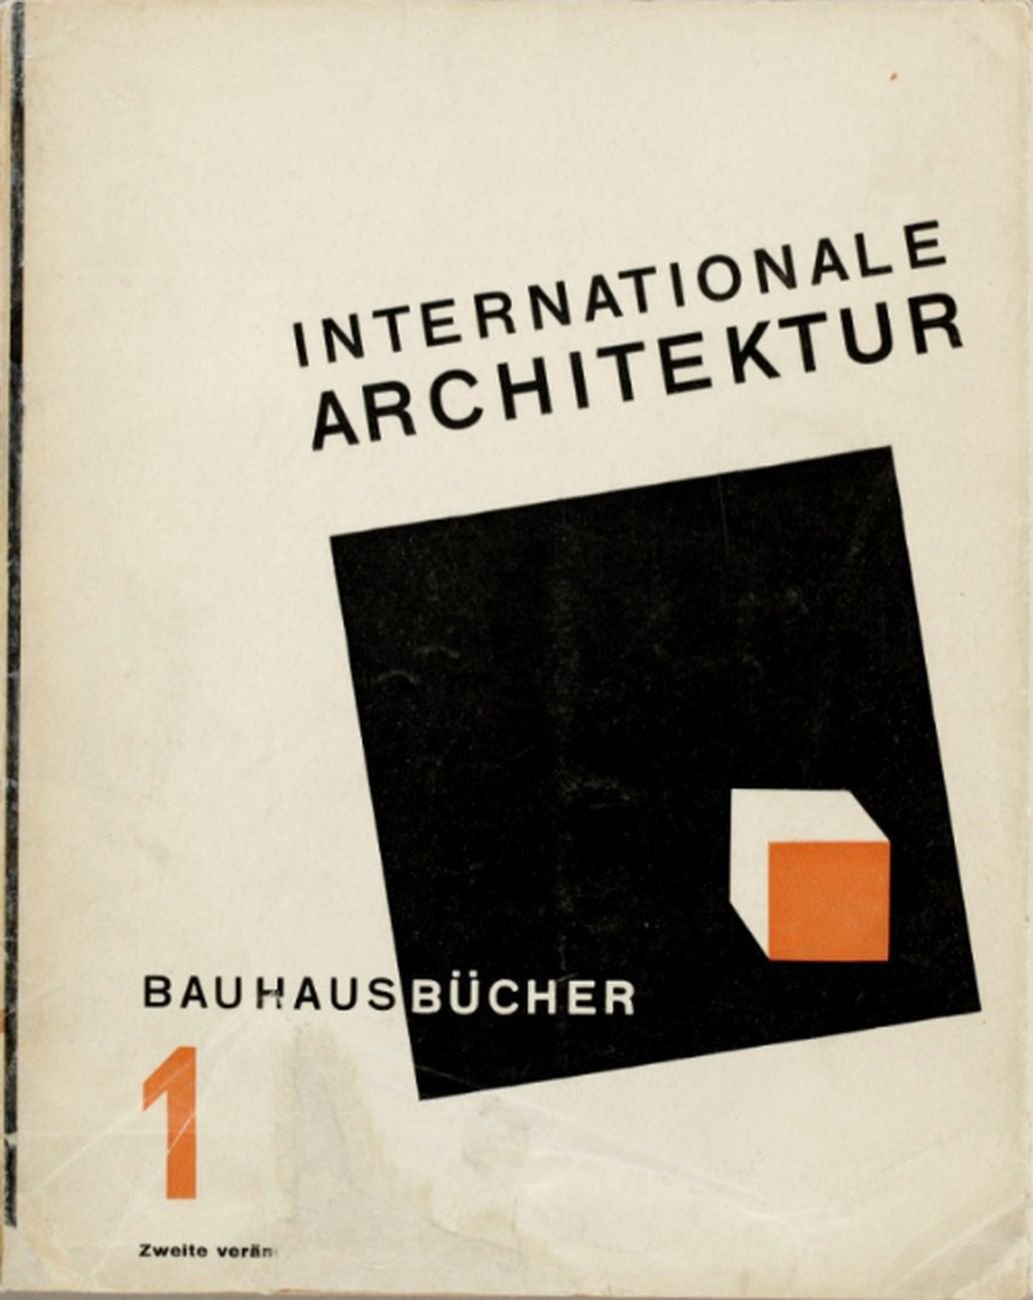 Bauhausbücher #1. Walter Gropius (ed.), Internationale Architektur, 1925